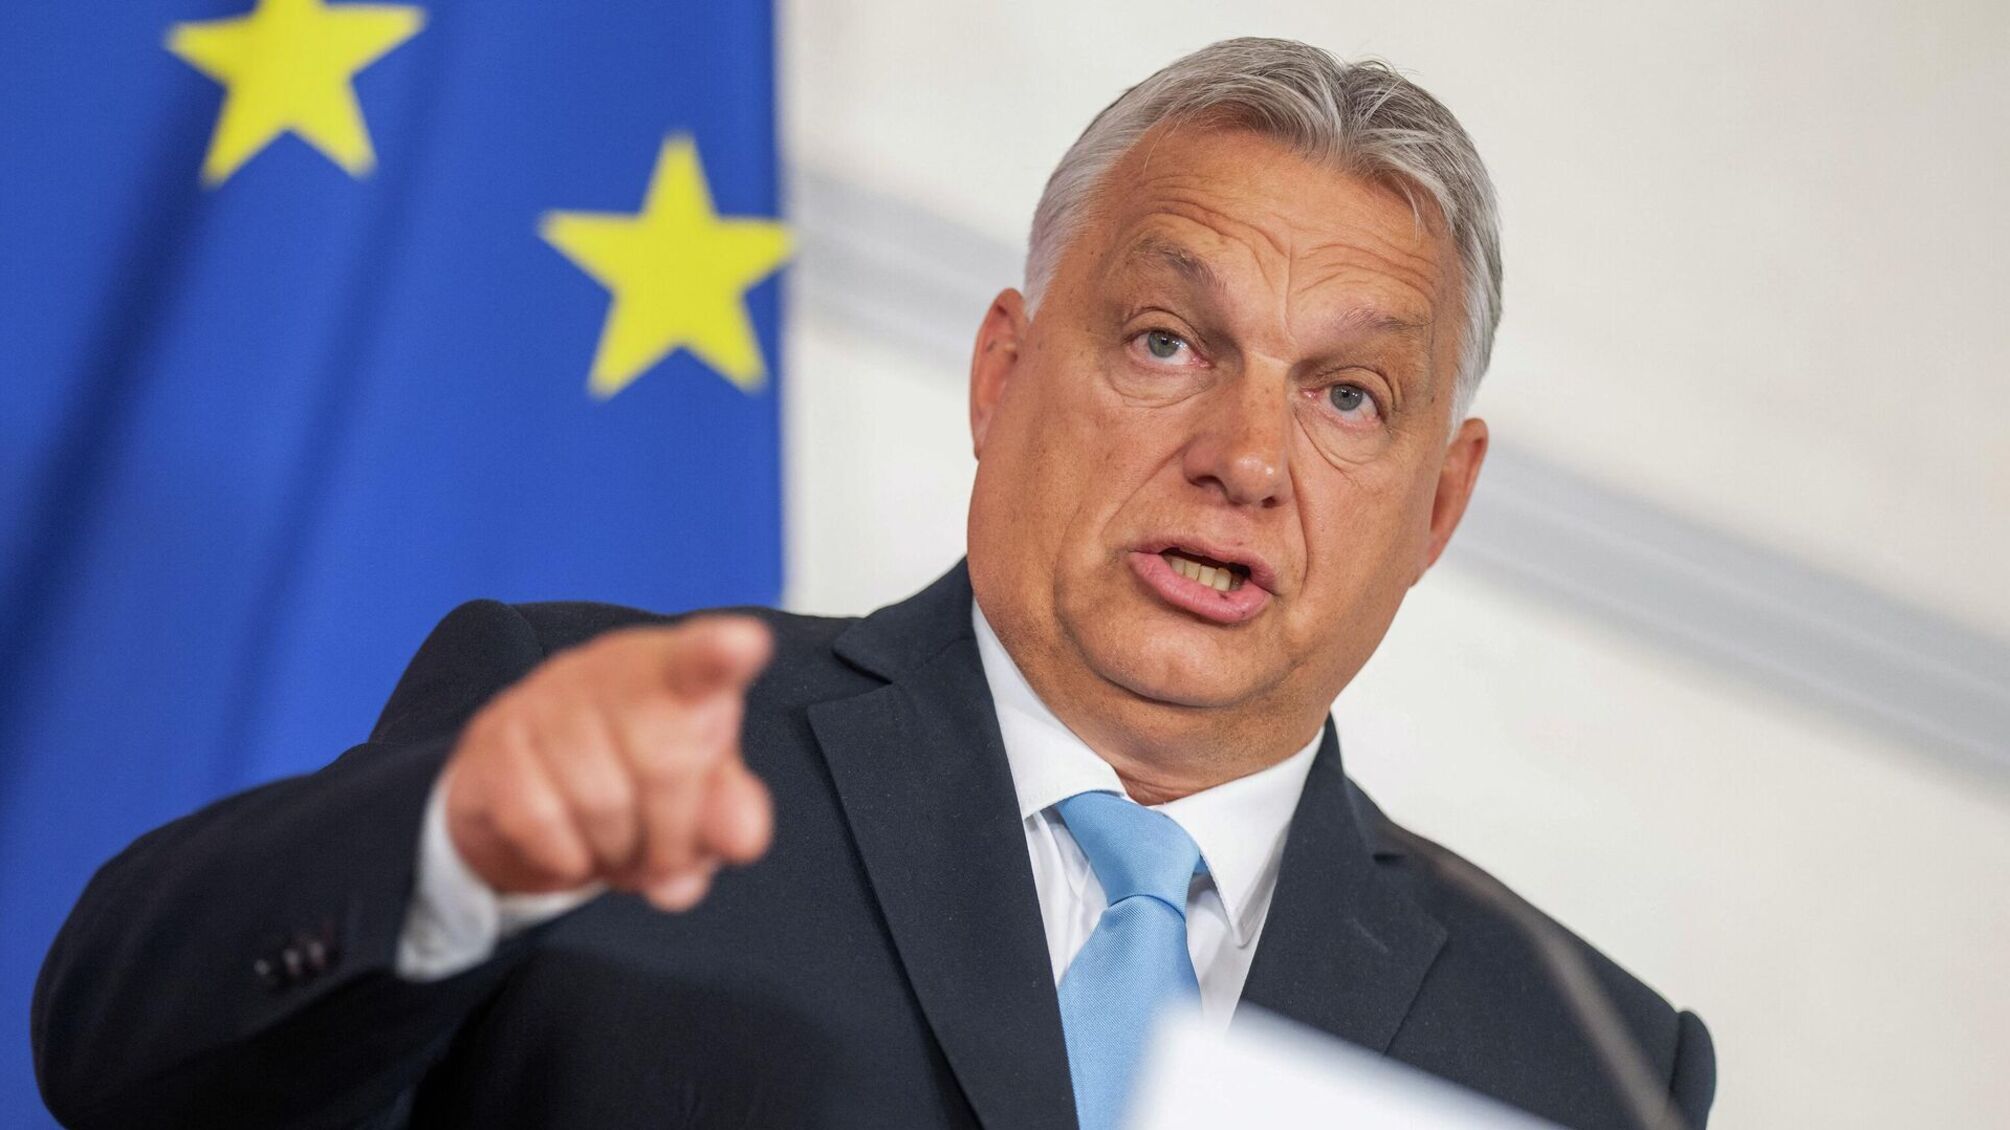 ЕС планирует предоставить Украине 20 миллиардов евро в обход Венгрии, – FT